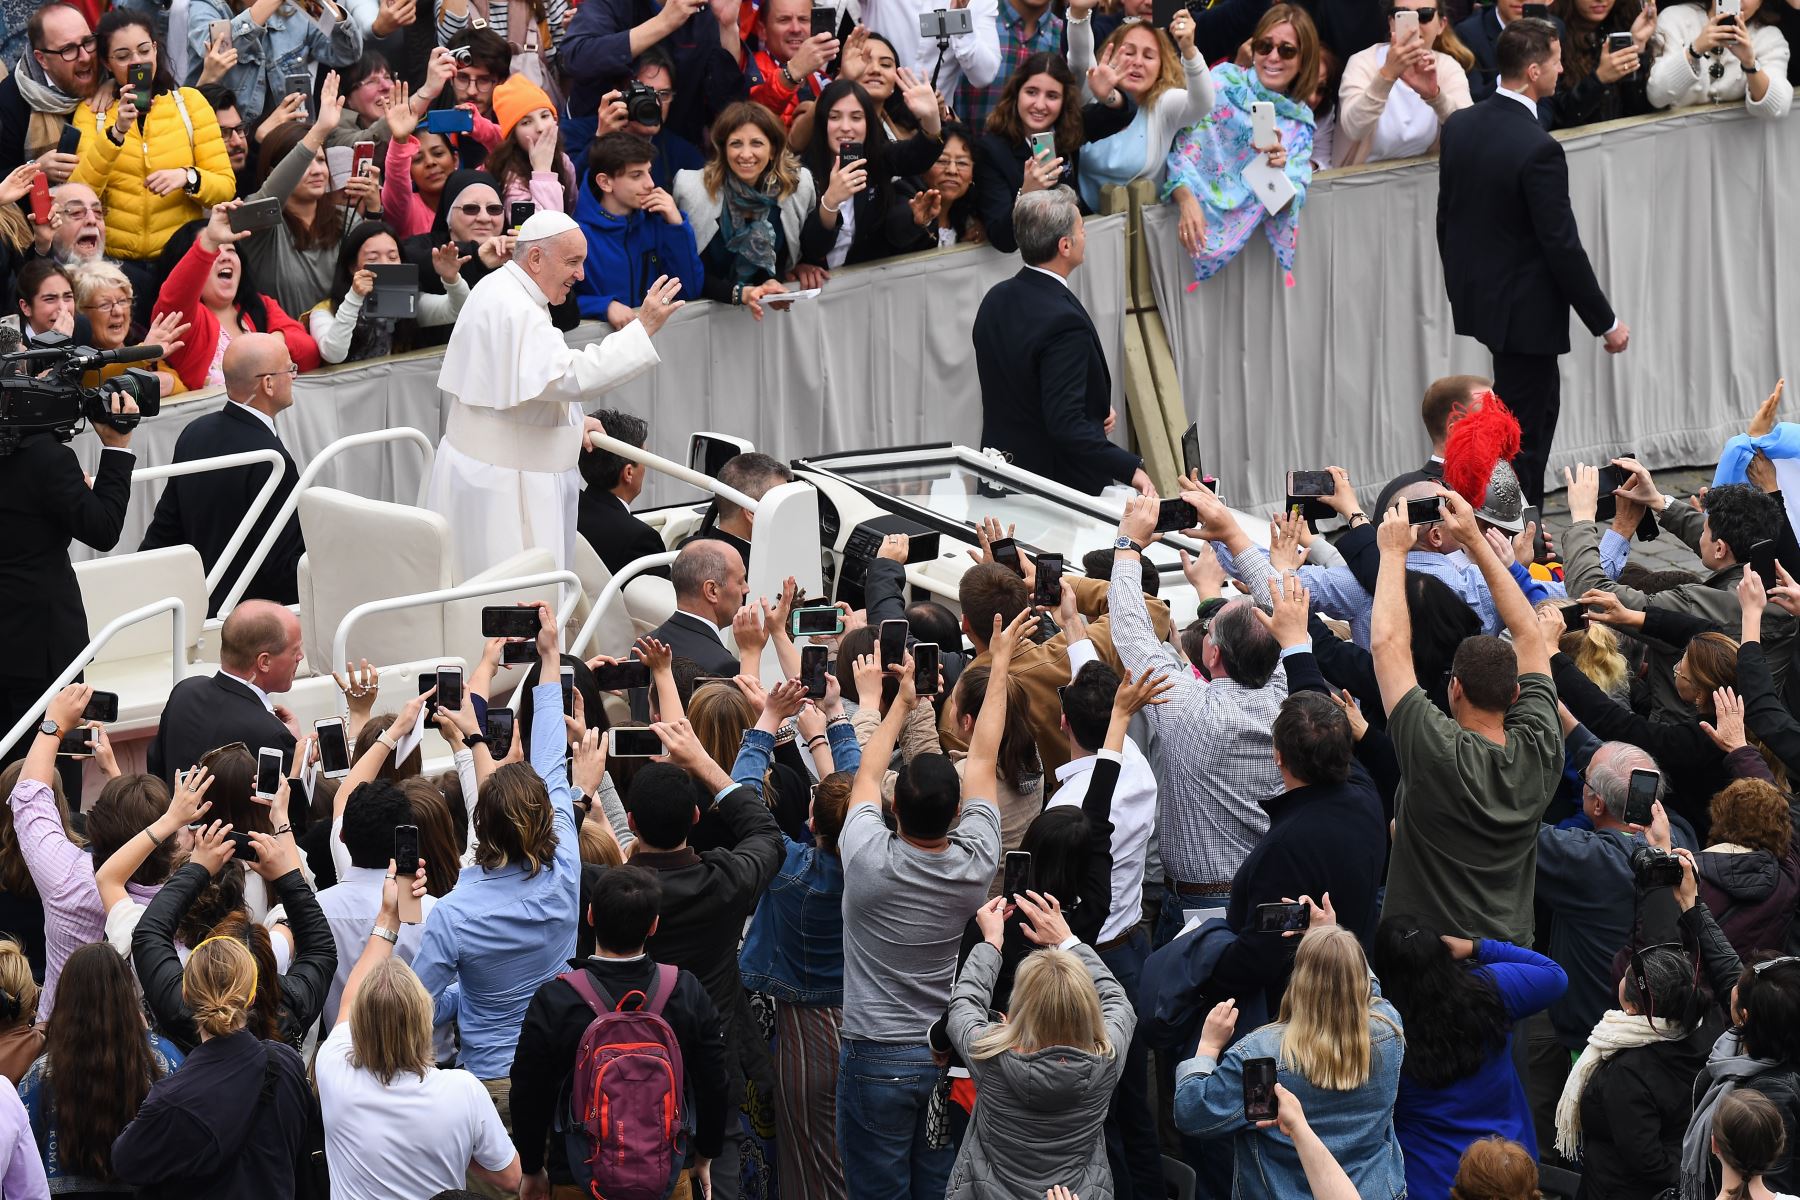 Papa Francisco celebra misa en Vaticano.Los cristianos de todo el mundo están celebrando la Semana Santa, conmemorando la crucifixión de Jesucristo, que lleva a su resurrección en la Pascua.
Foto: AFP